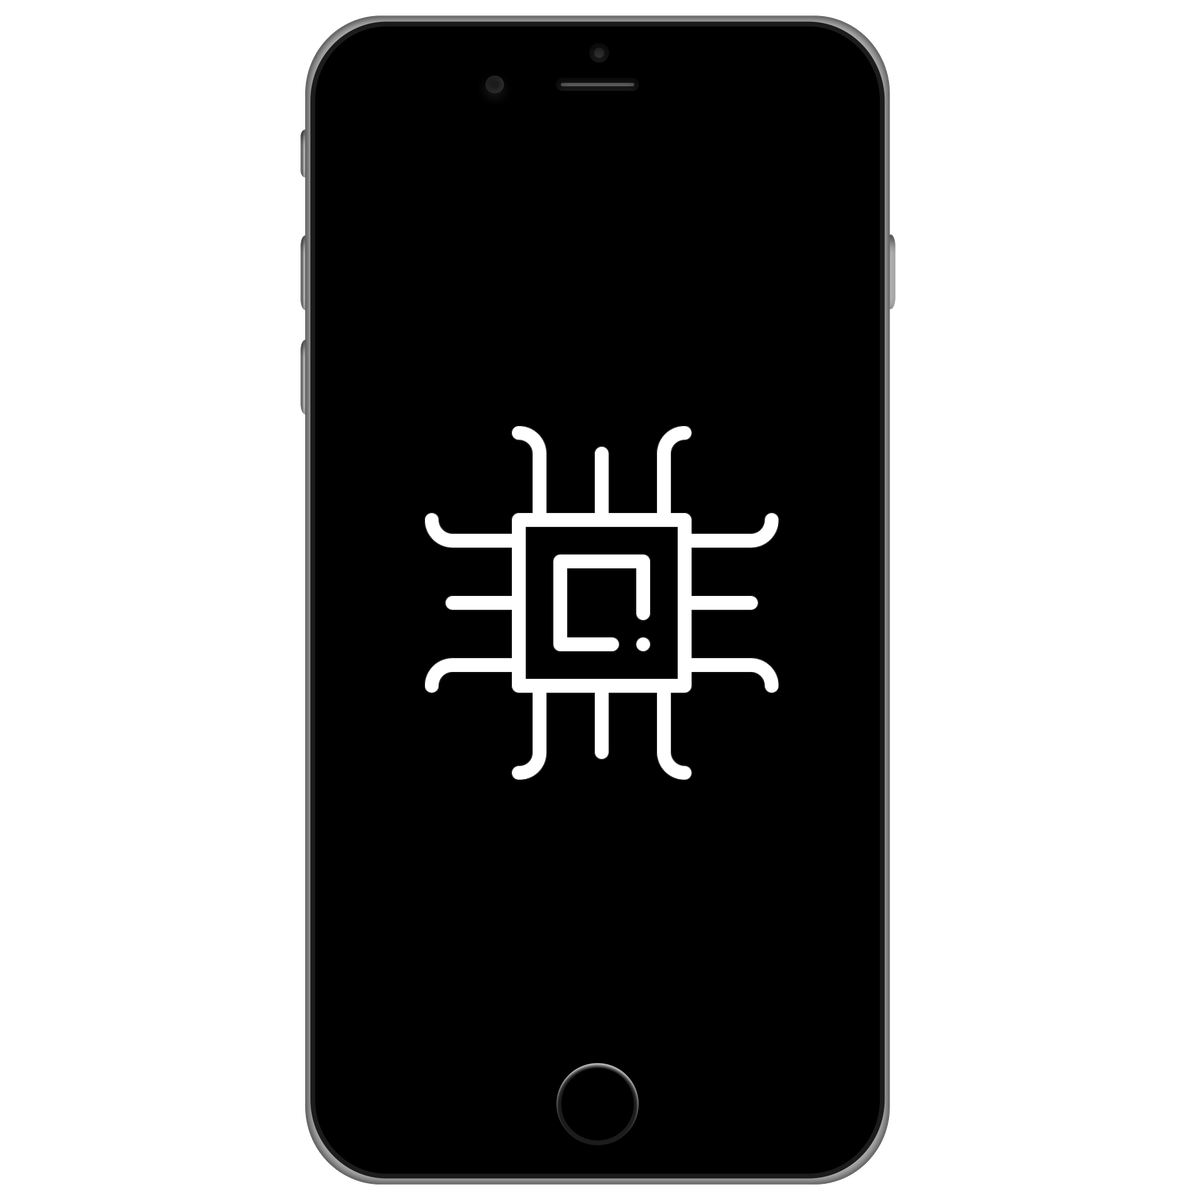 iPhone 11 Motherboard Repair - TechPros